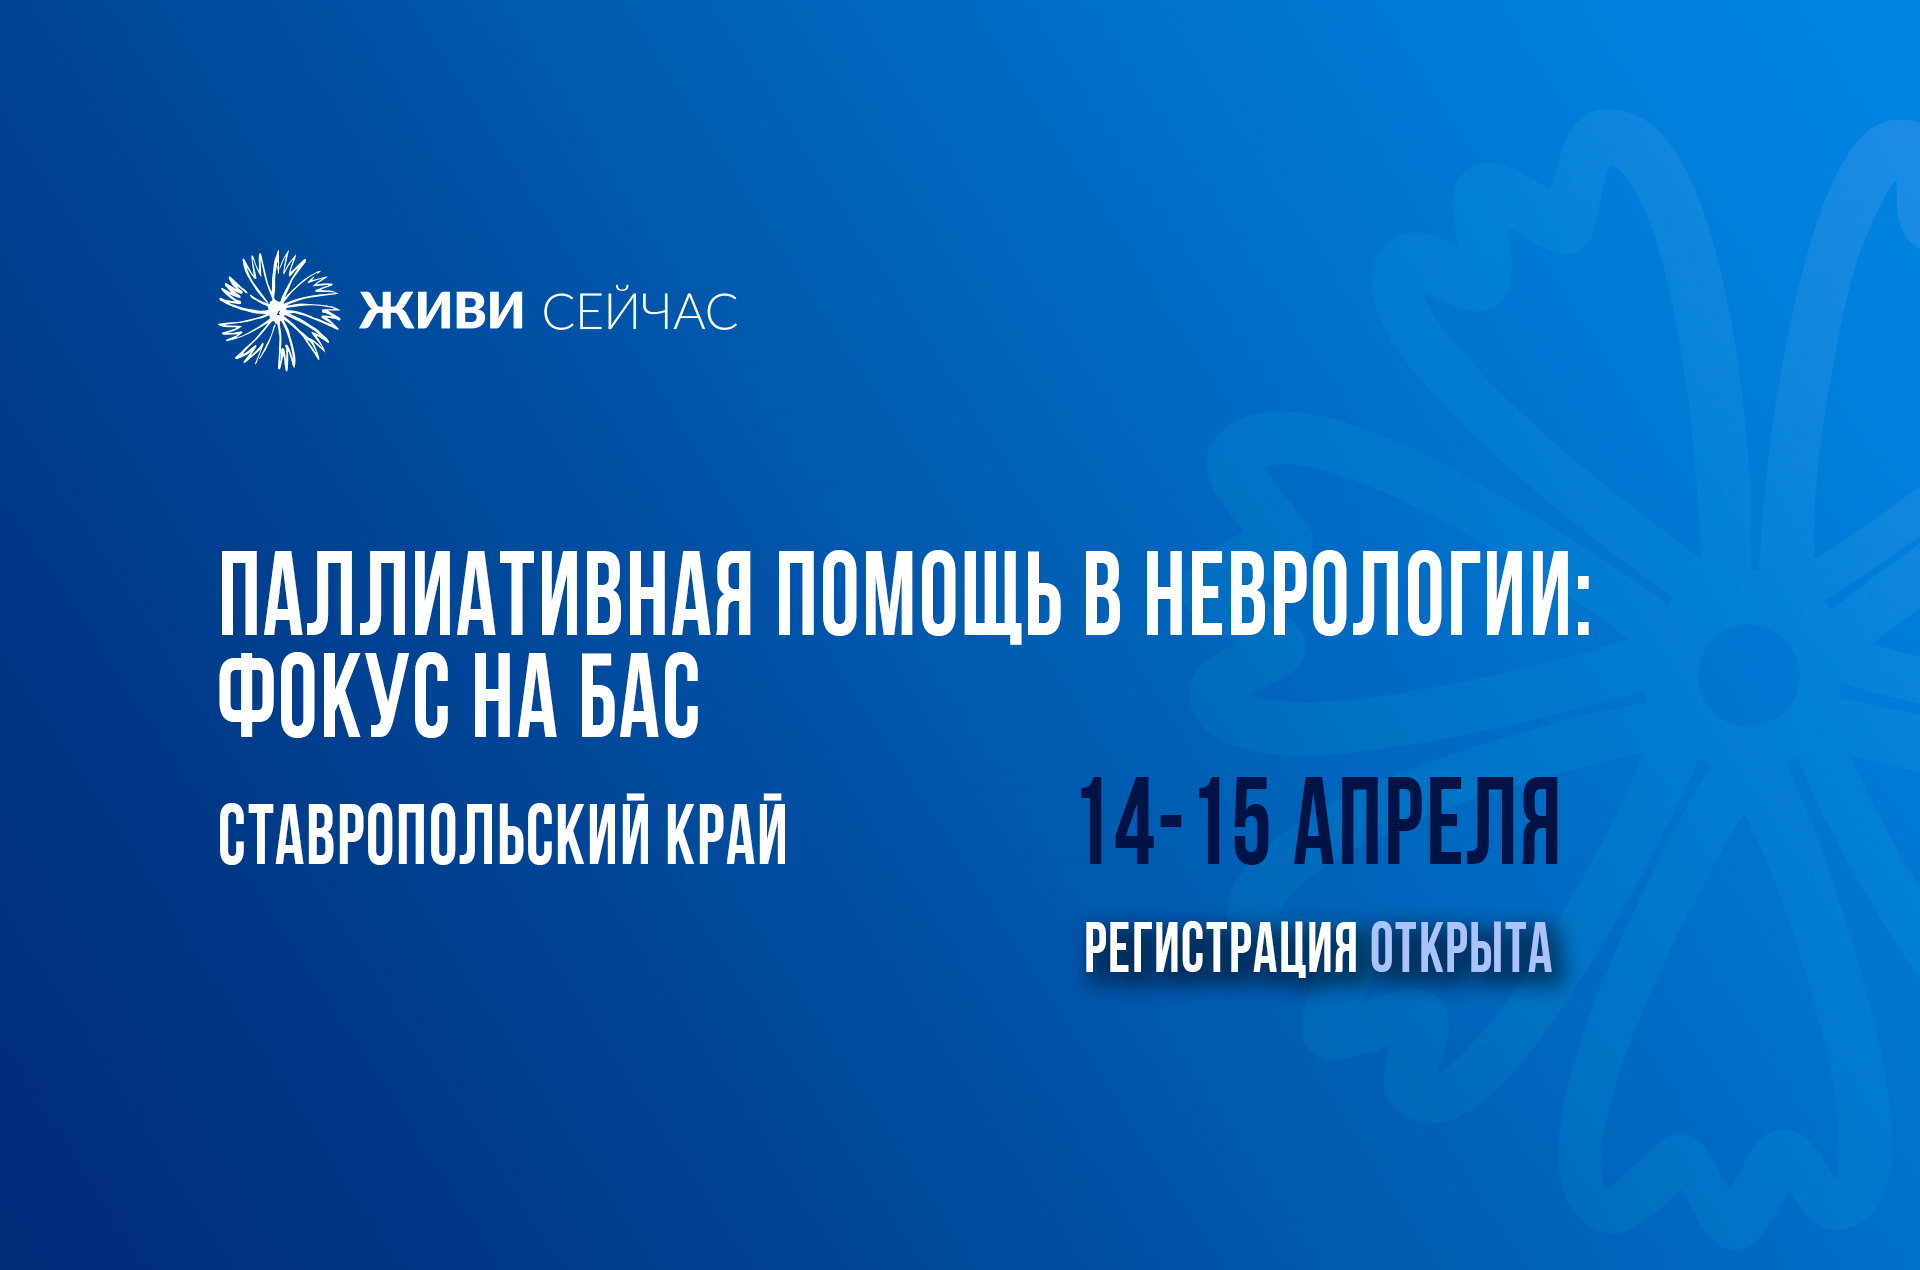 В Ставрополе пройдет научно-практическая конференция по БАС